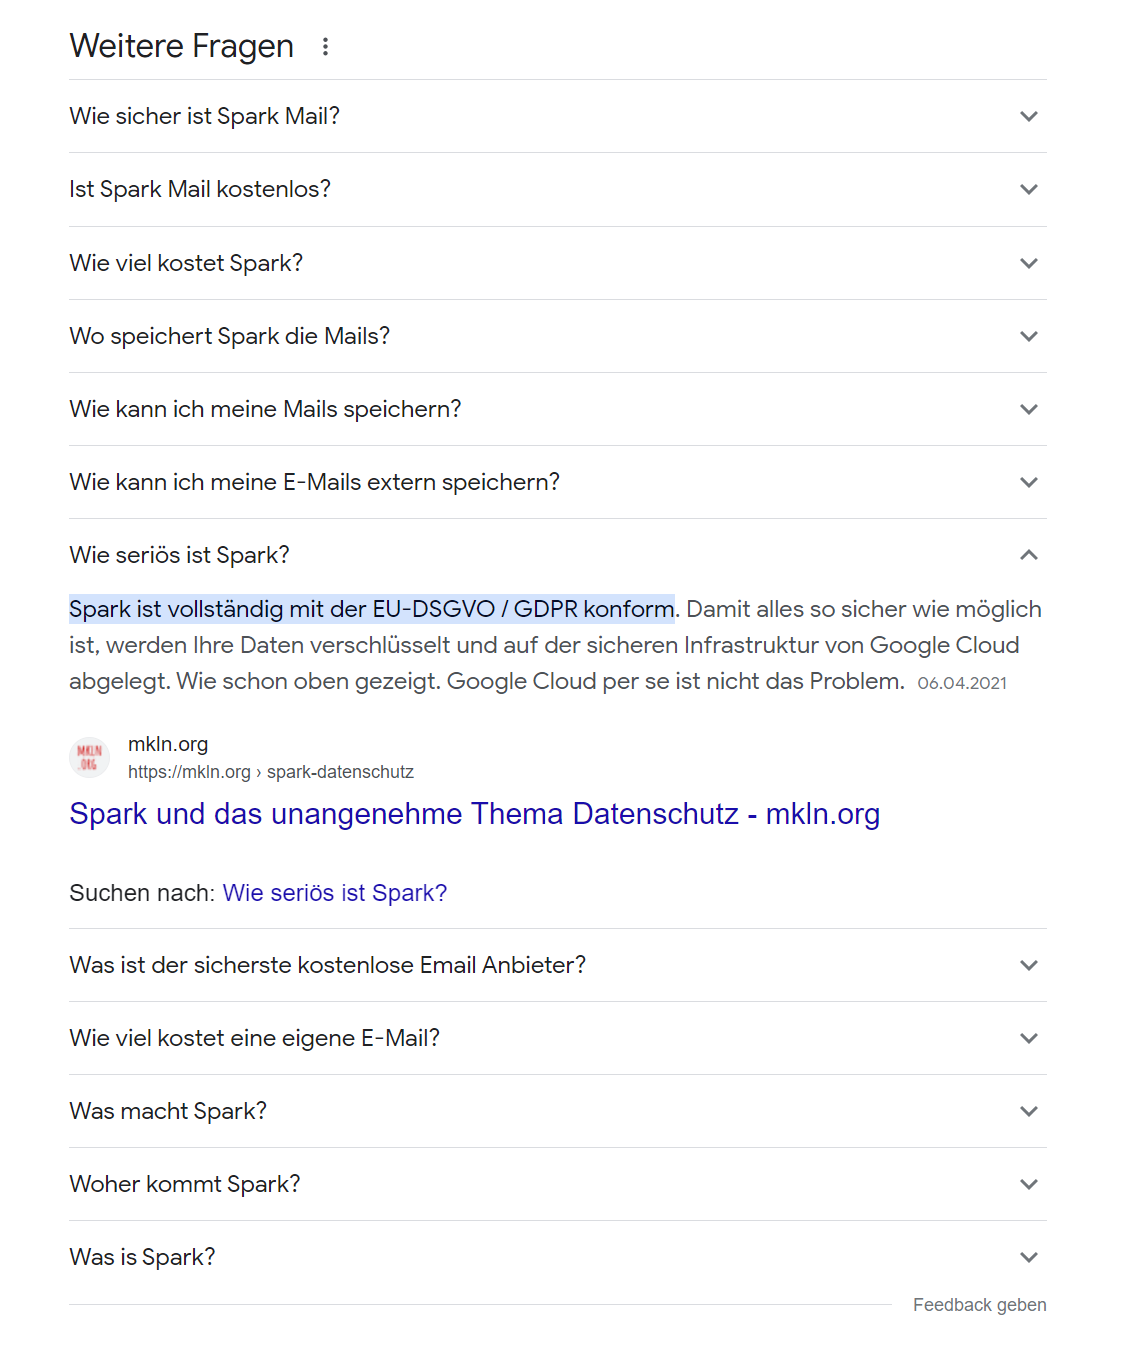 Screenshot der »Weiteren Fragen« auf der Google-Suchergebnisseite, die Frage »Ist Spark seriös?« ist mit Antwort ausgeklappt.